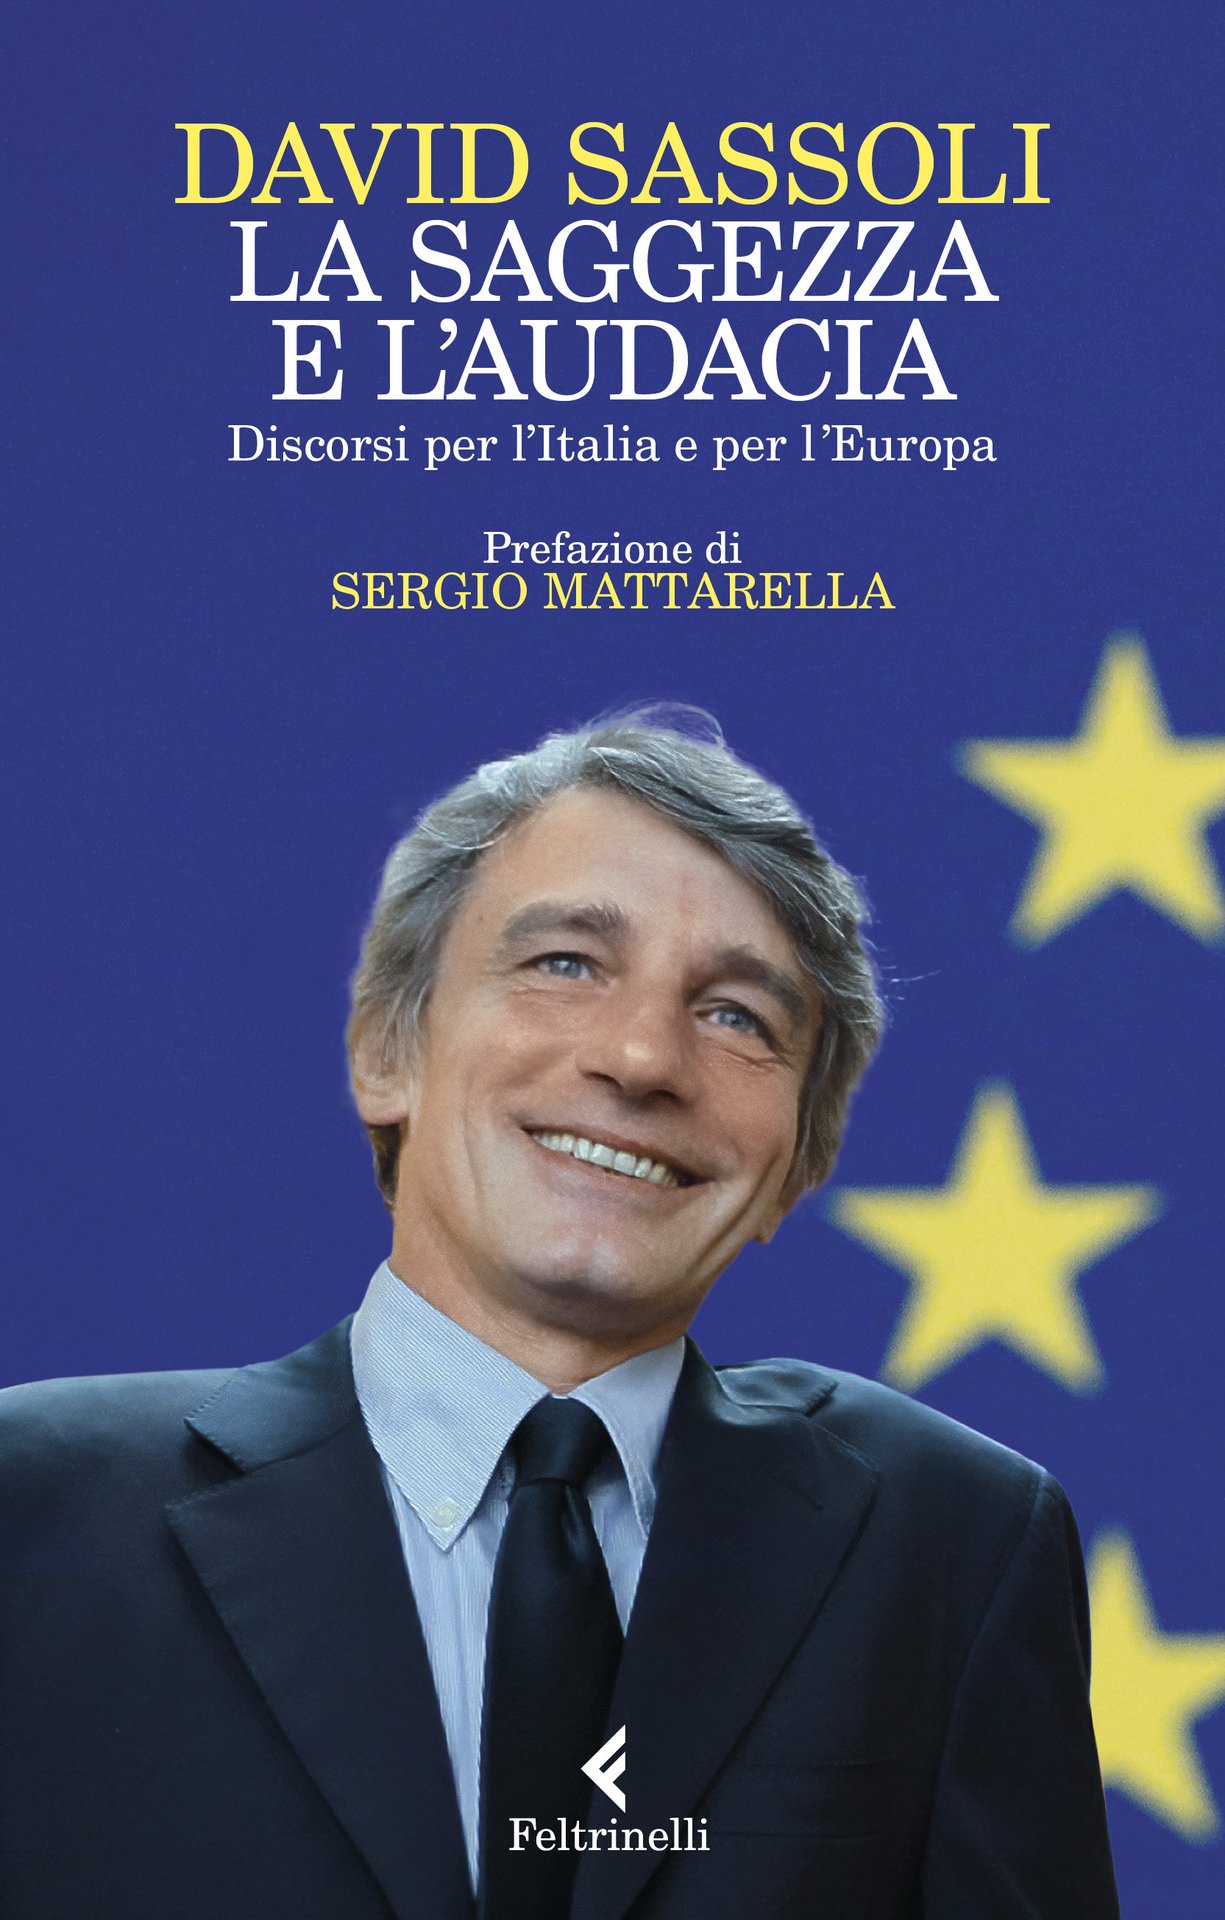 "La saggezza e l'audacia Discorsi per l’Italia e per l’Europa" di David Sassoli a Verona